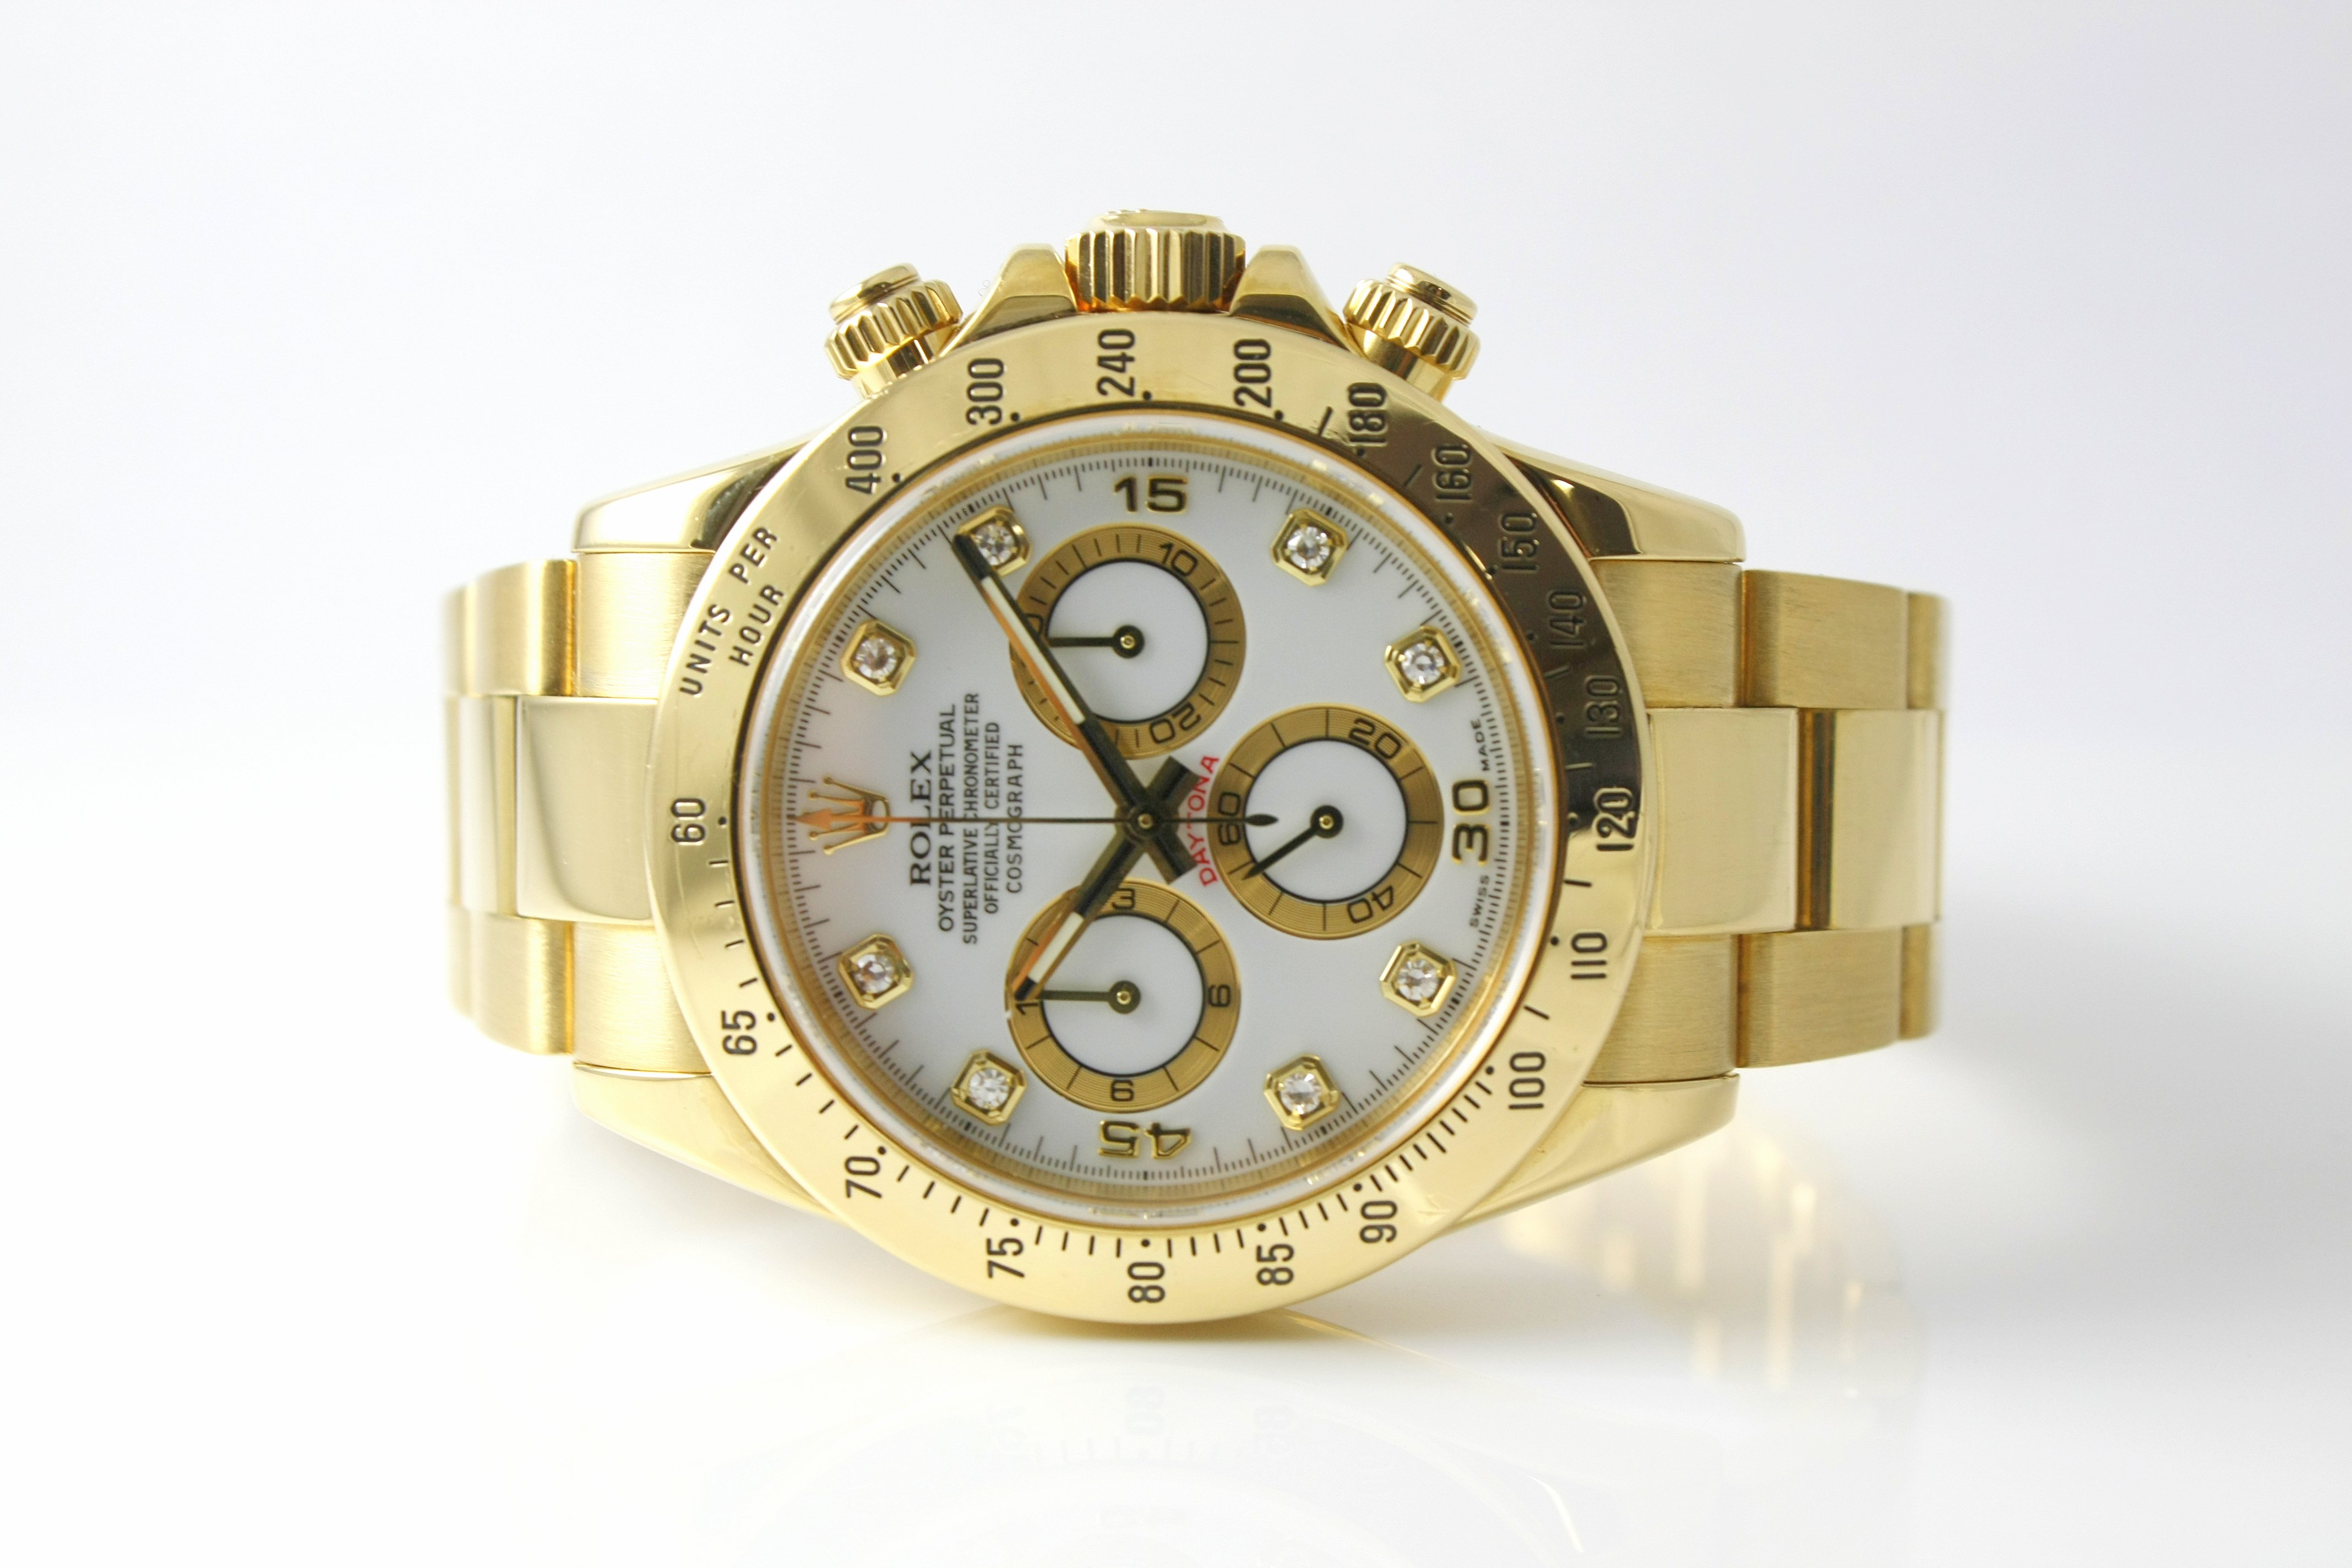 Rolex 18k Yellow Gold Daytona with Diamonds - $26,000 - Jewelry-N-Loan.